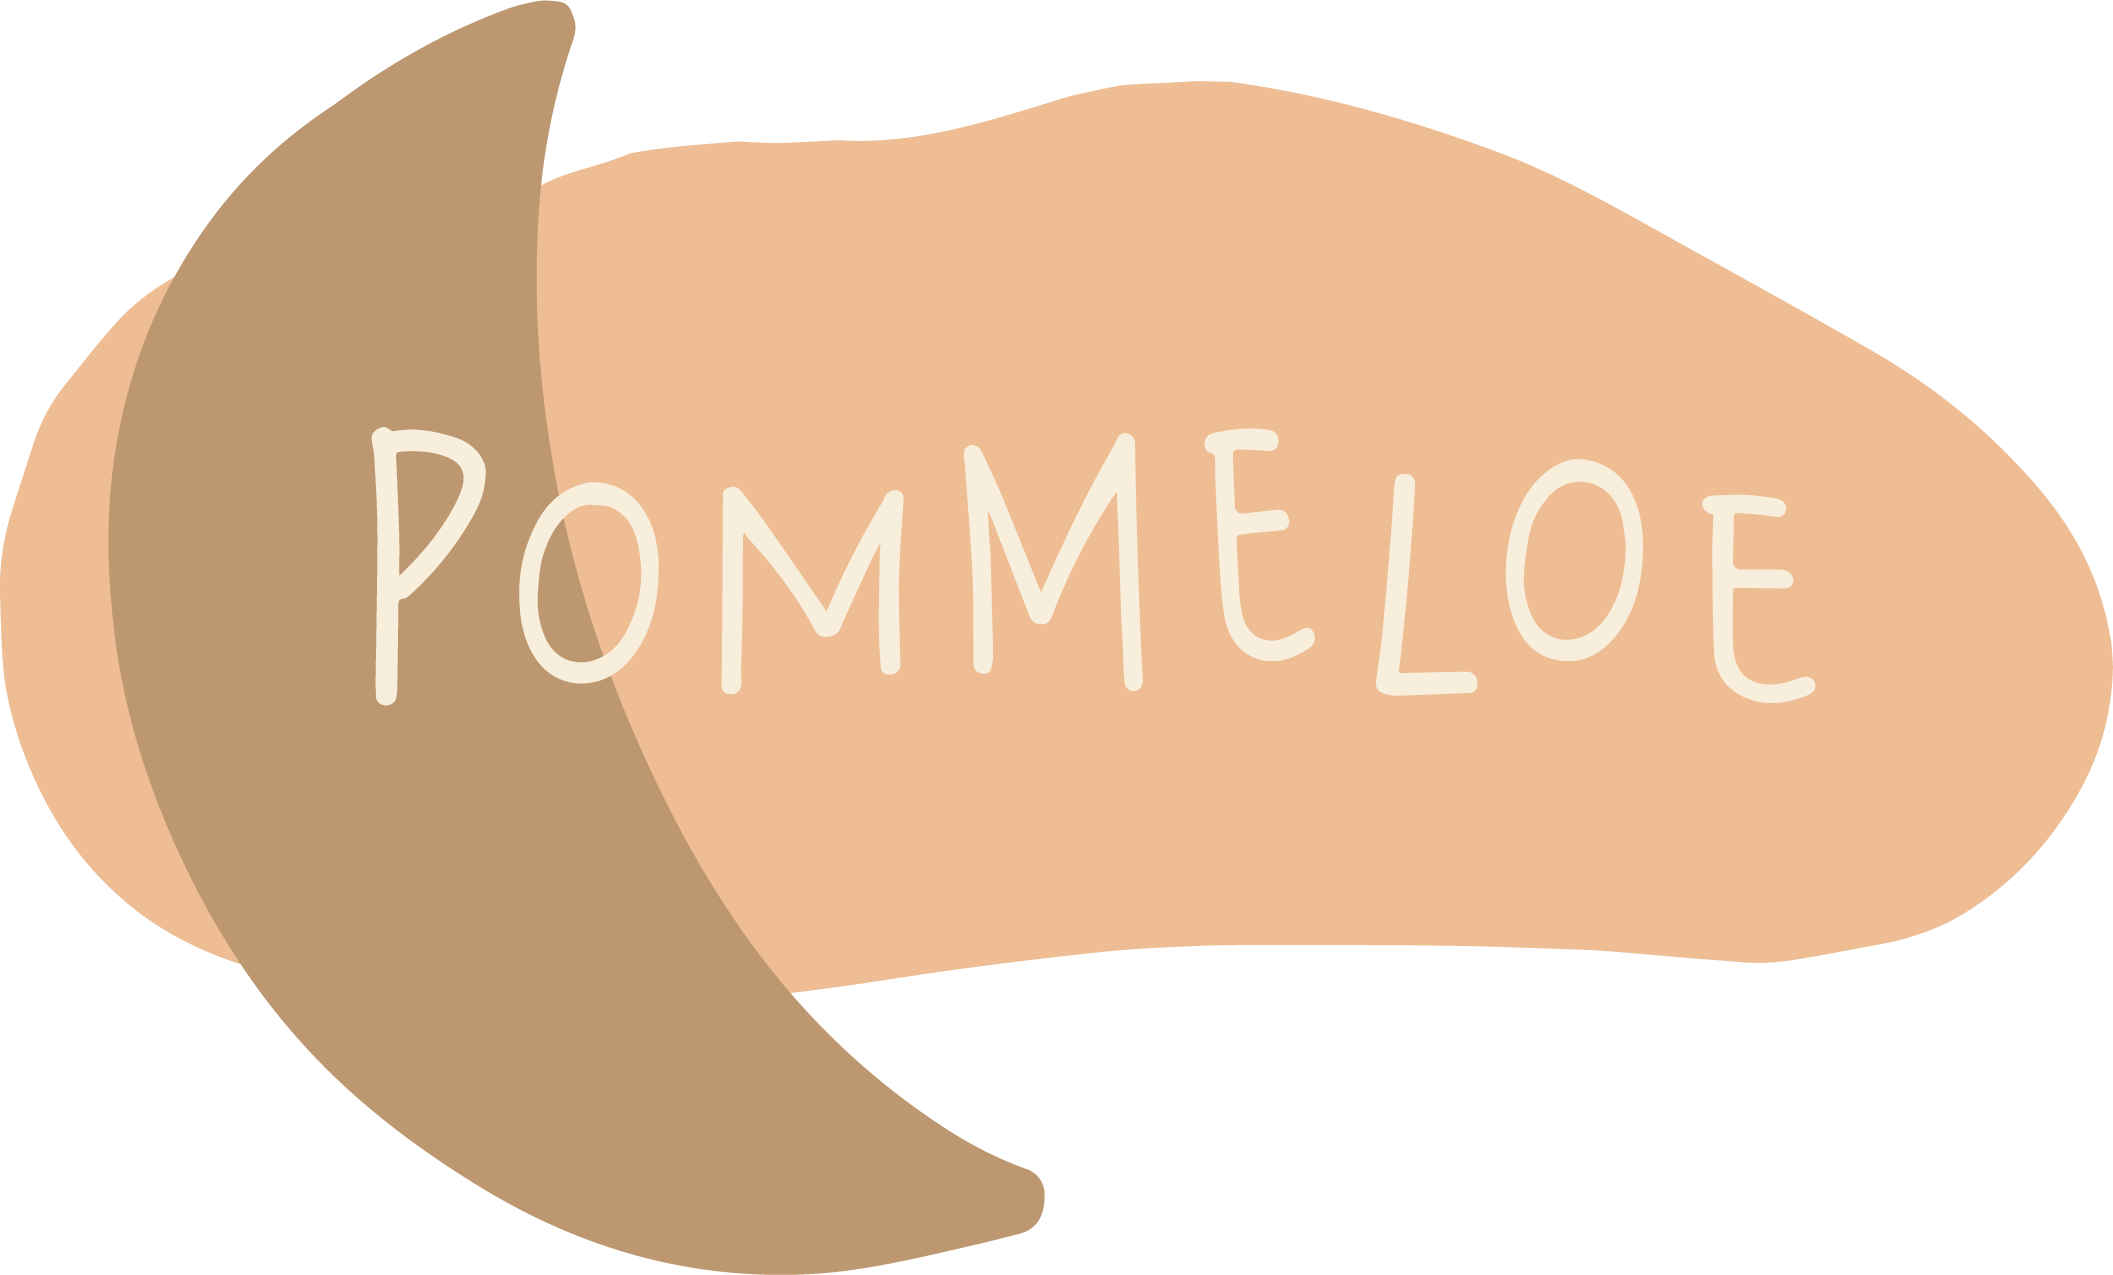 POMMELOE